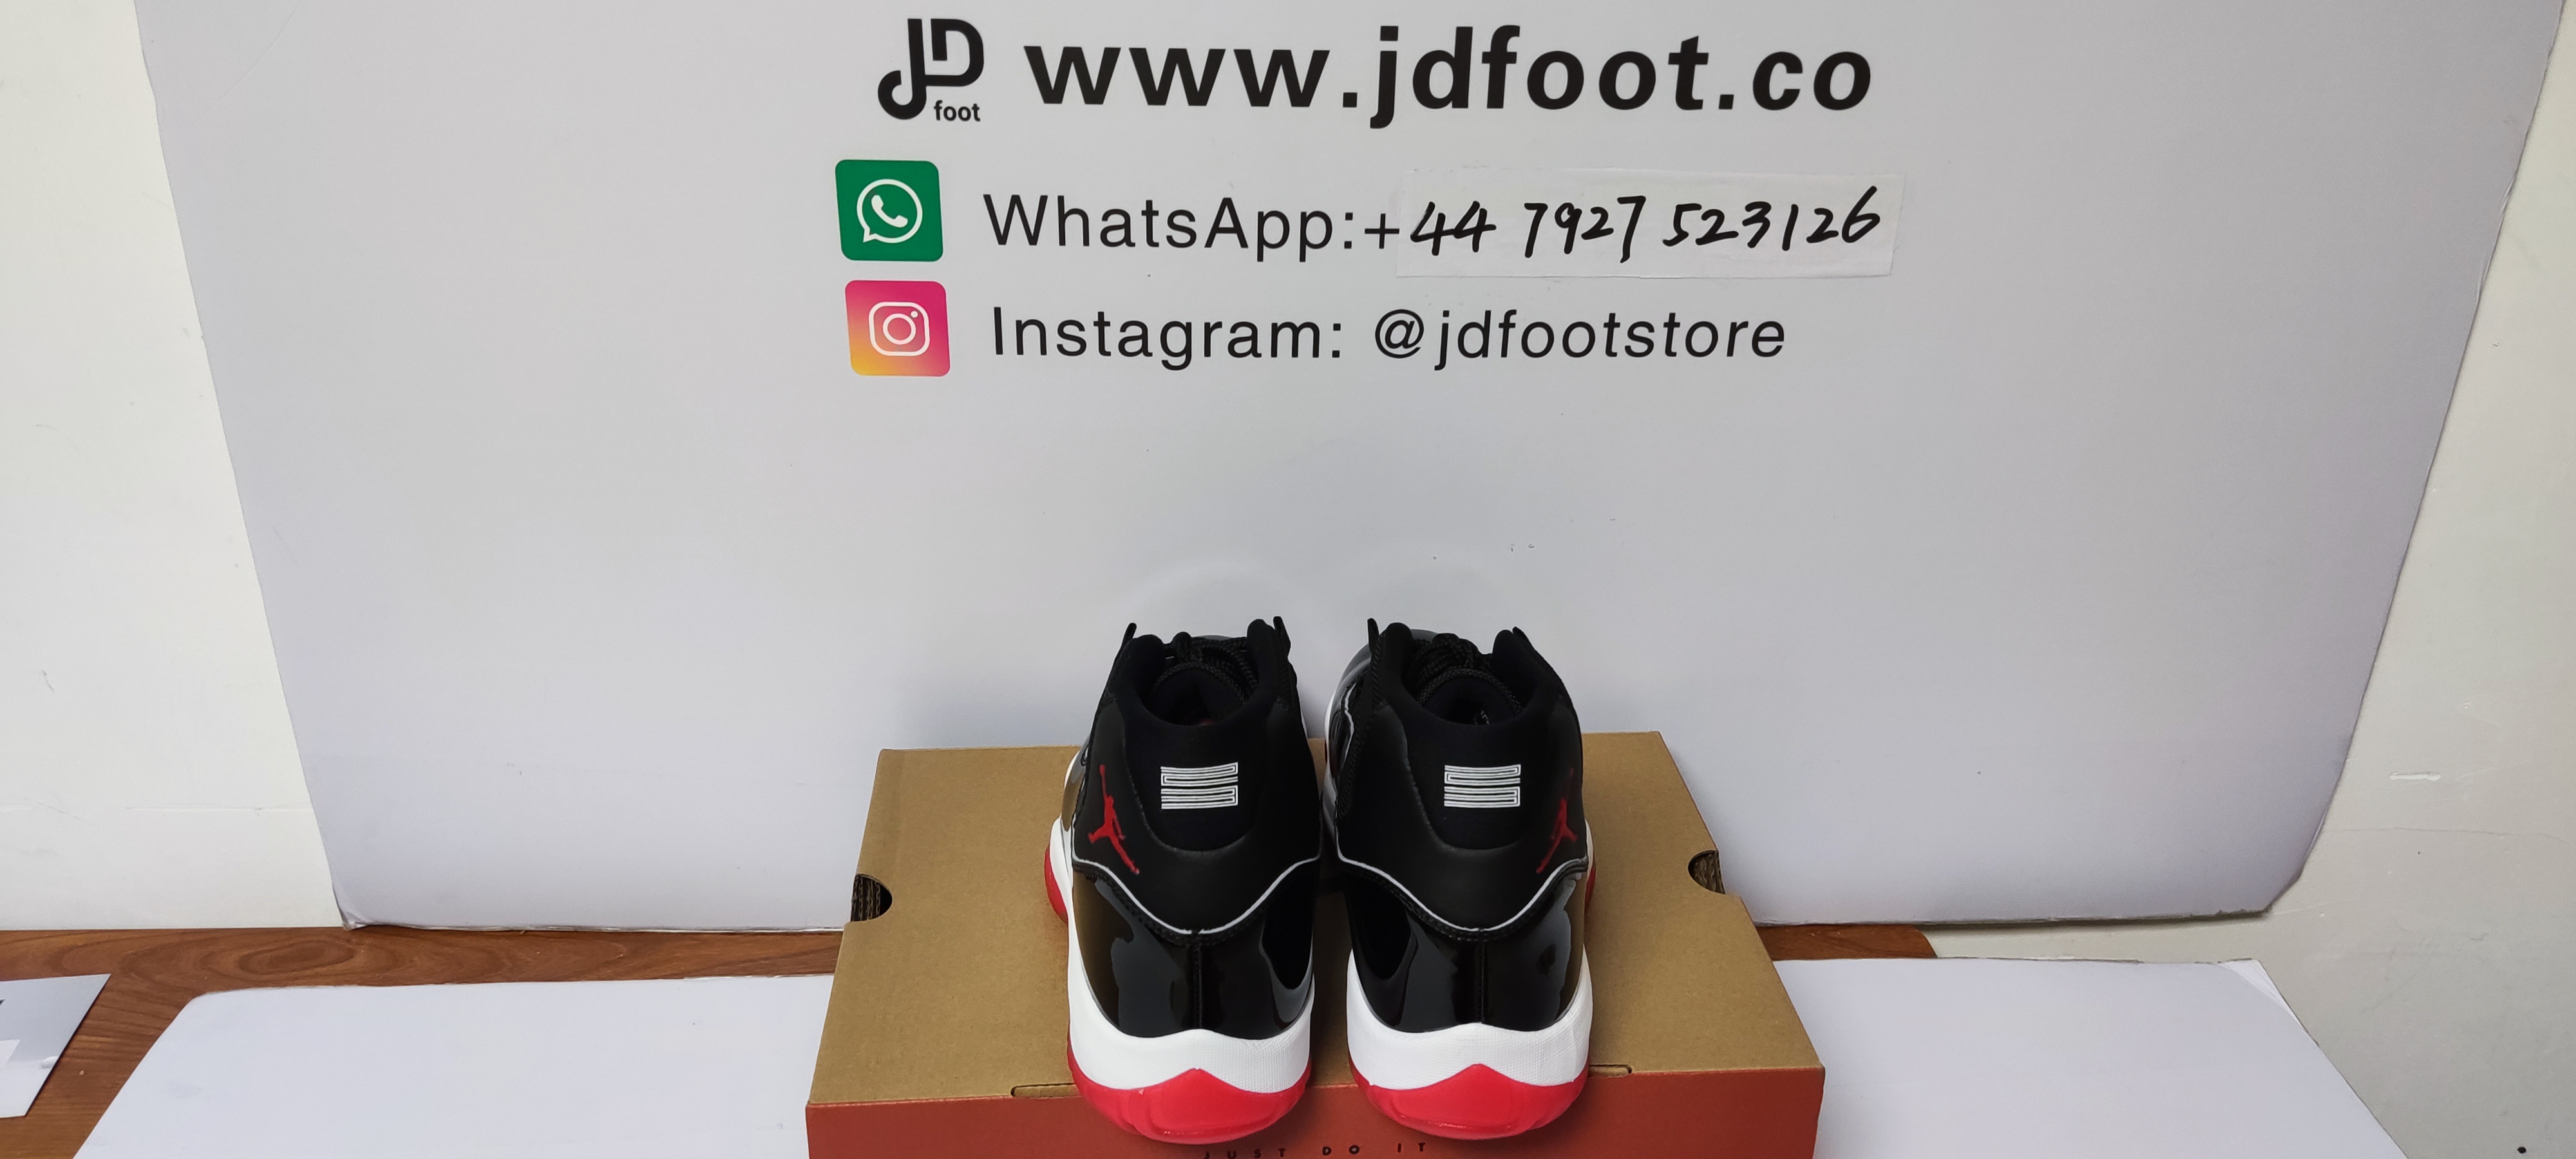 replica jordan 11,best replica sneakers